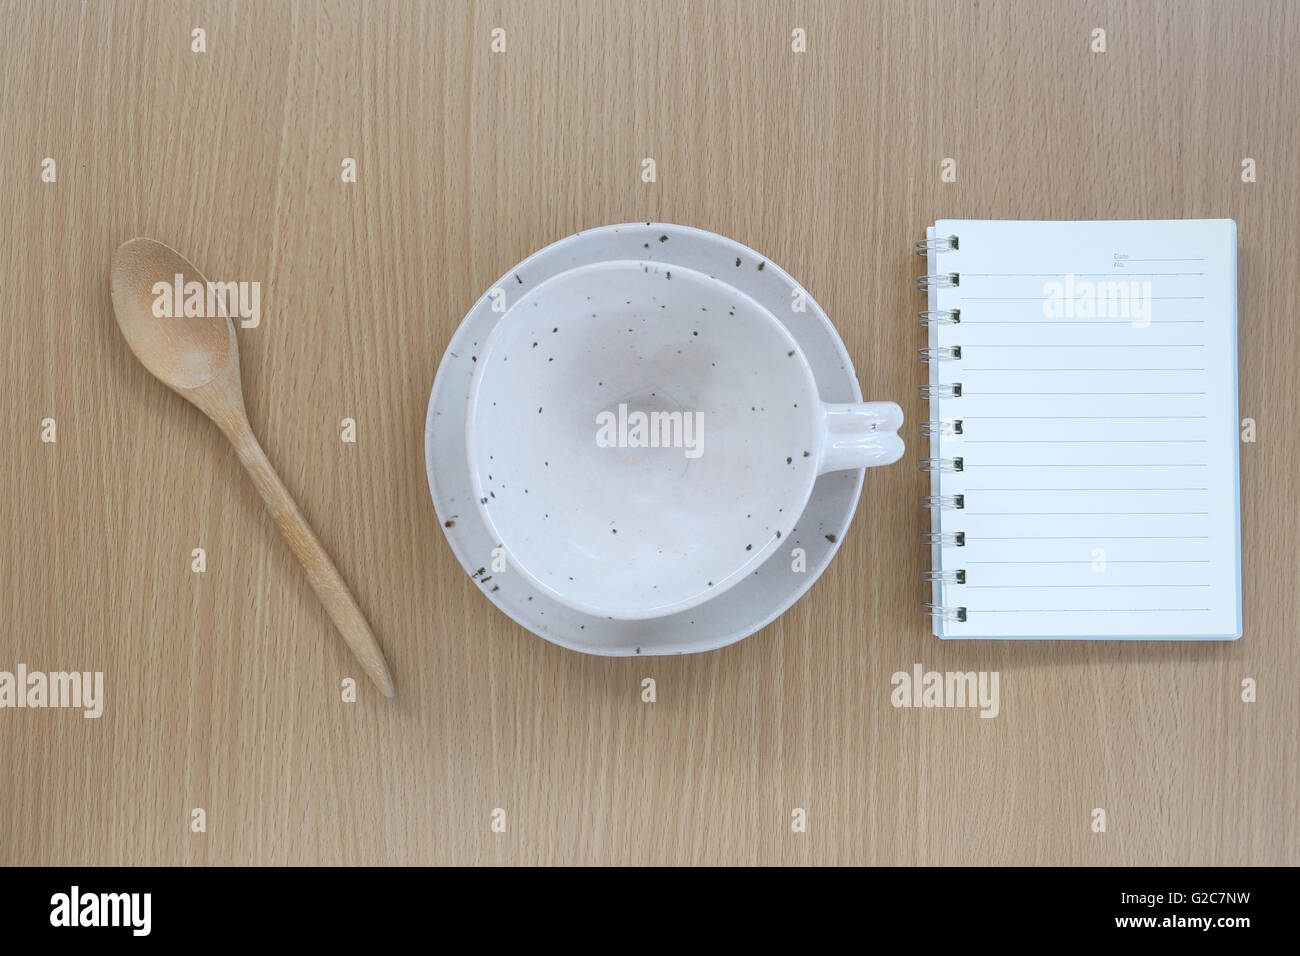 White tazza di caffè e note book in vista dall'alto su uno sfondo di legno per il design concept food. Foto Stock